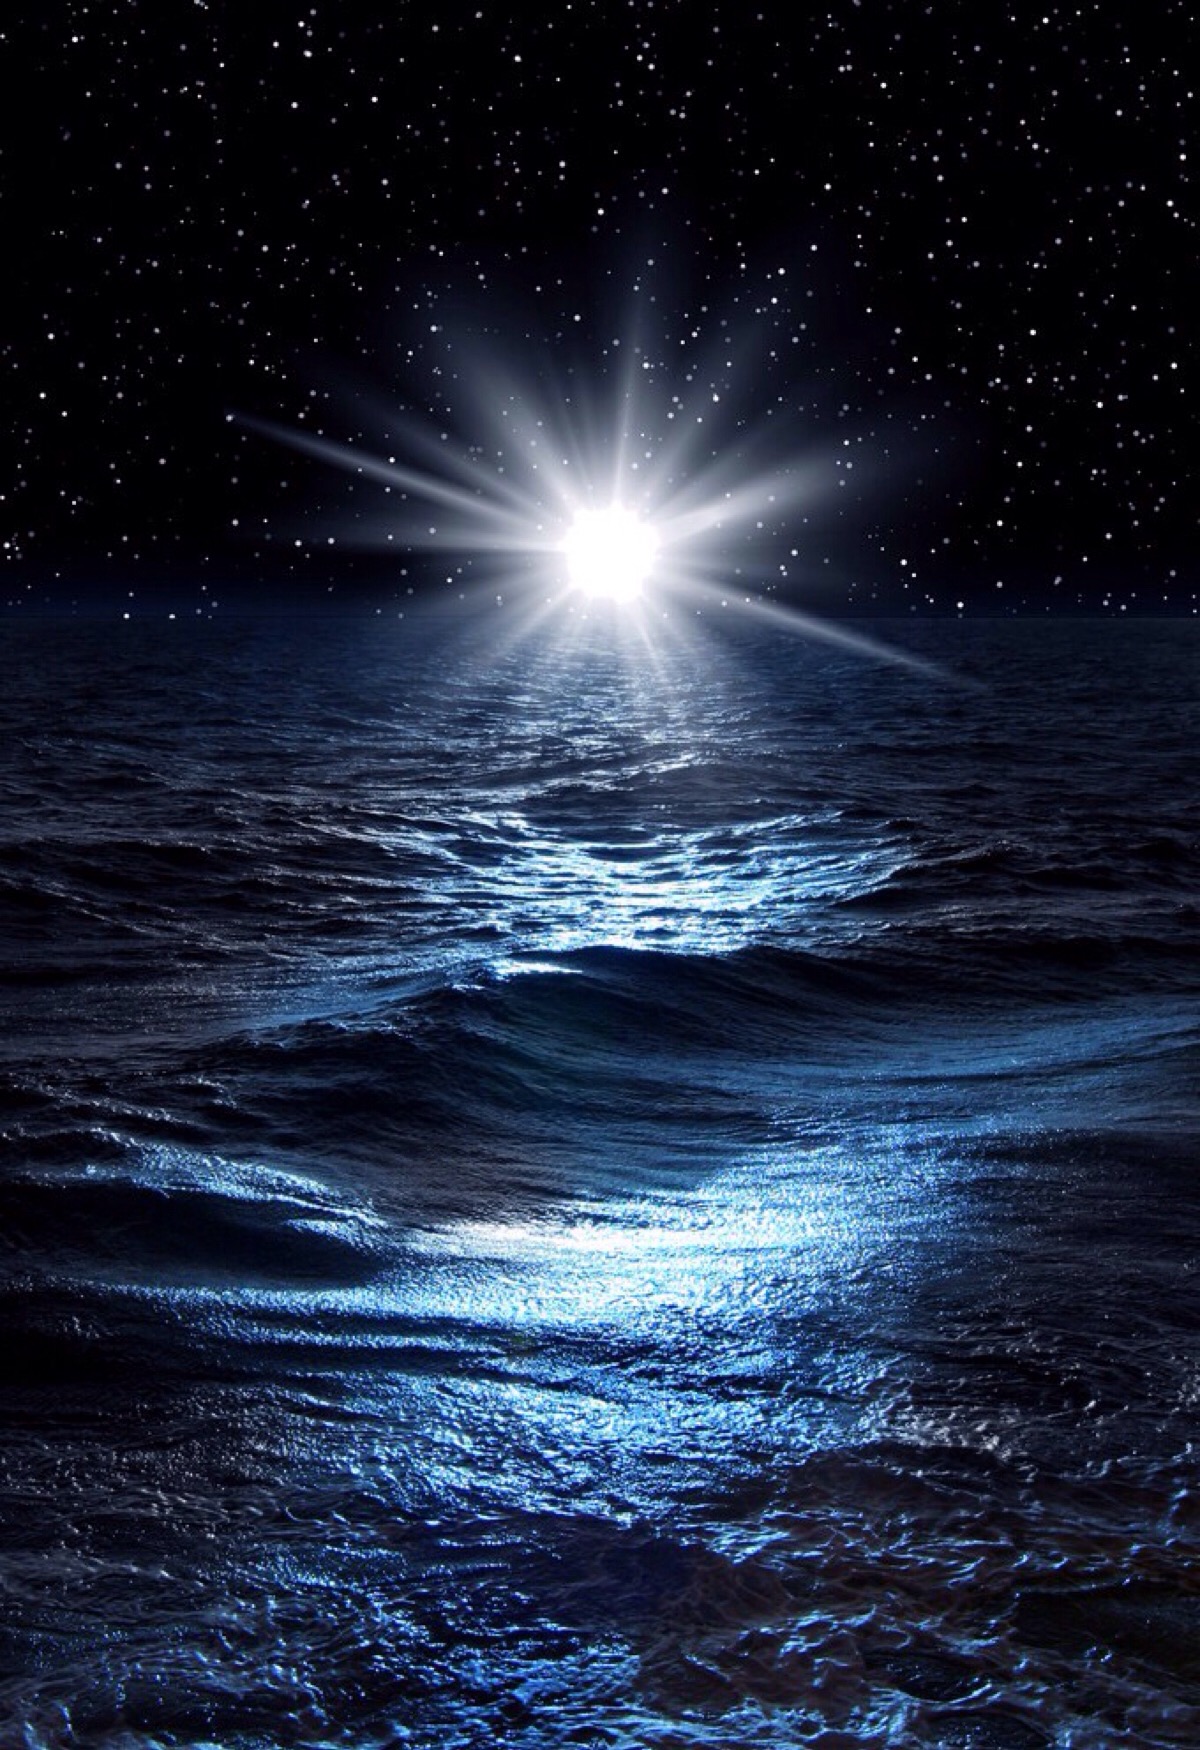 唯美星空 夜景 海面 海洋 月光 夜空 自然风景 唯美壁纸 手机壁纸